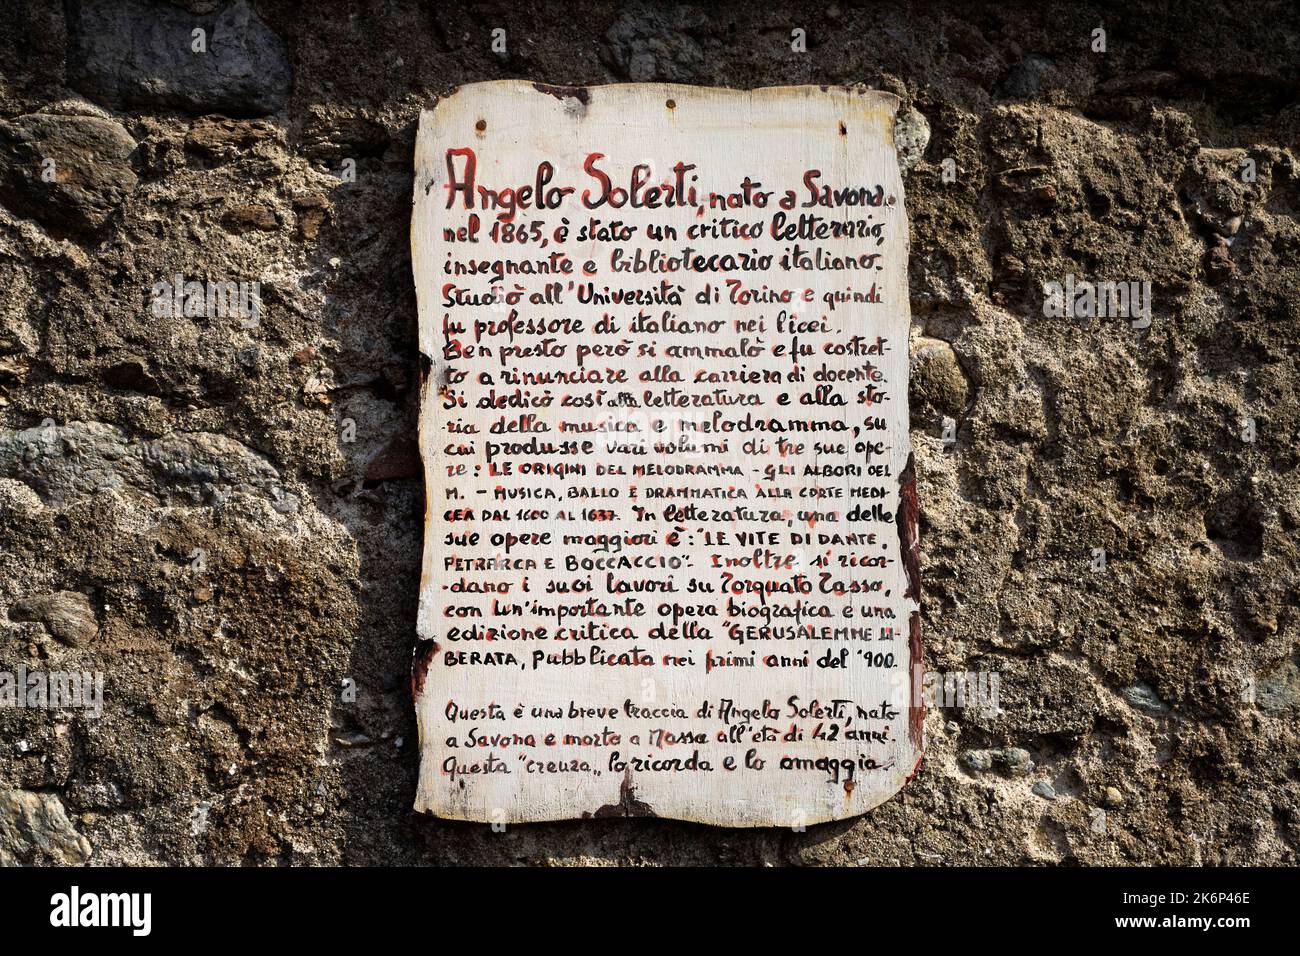 Via Solerti. Bild auf einer Tafel mit geschriebenem Text über Angelo Solerti, geboren in Savona. Künstler Imelda Bassanello, Heiligtum von Savona. Ligurien, Italien. Stockfoto